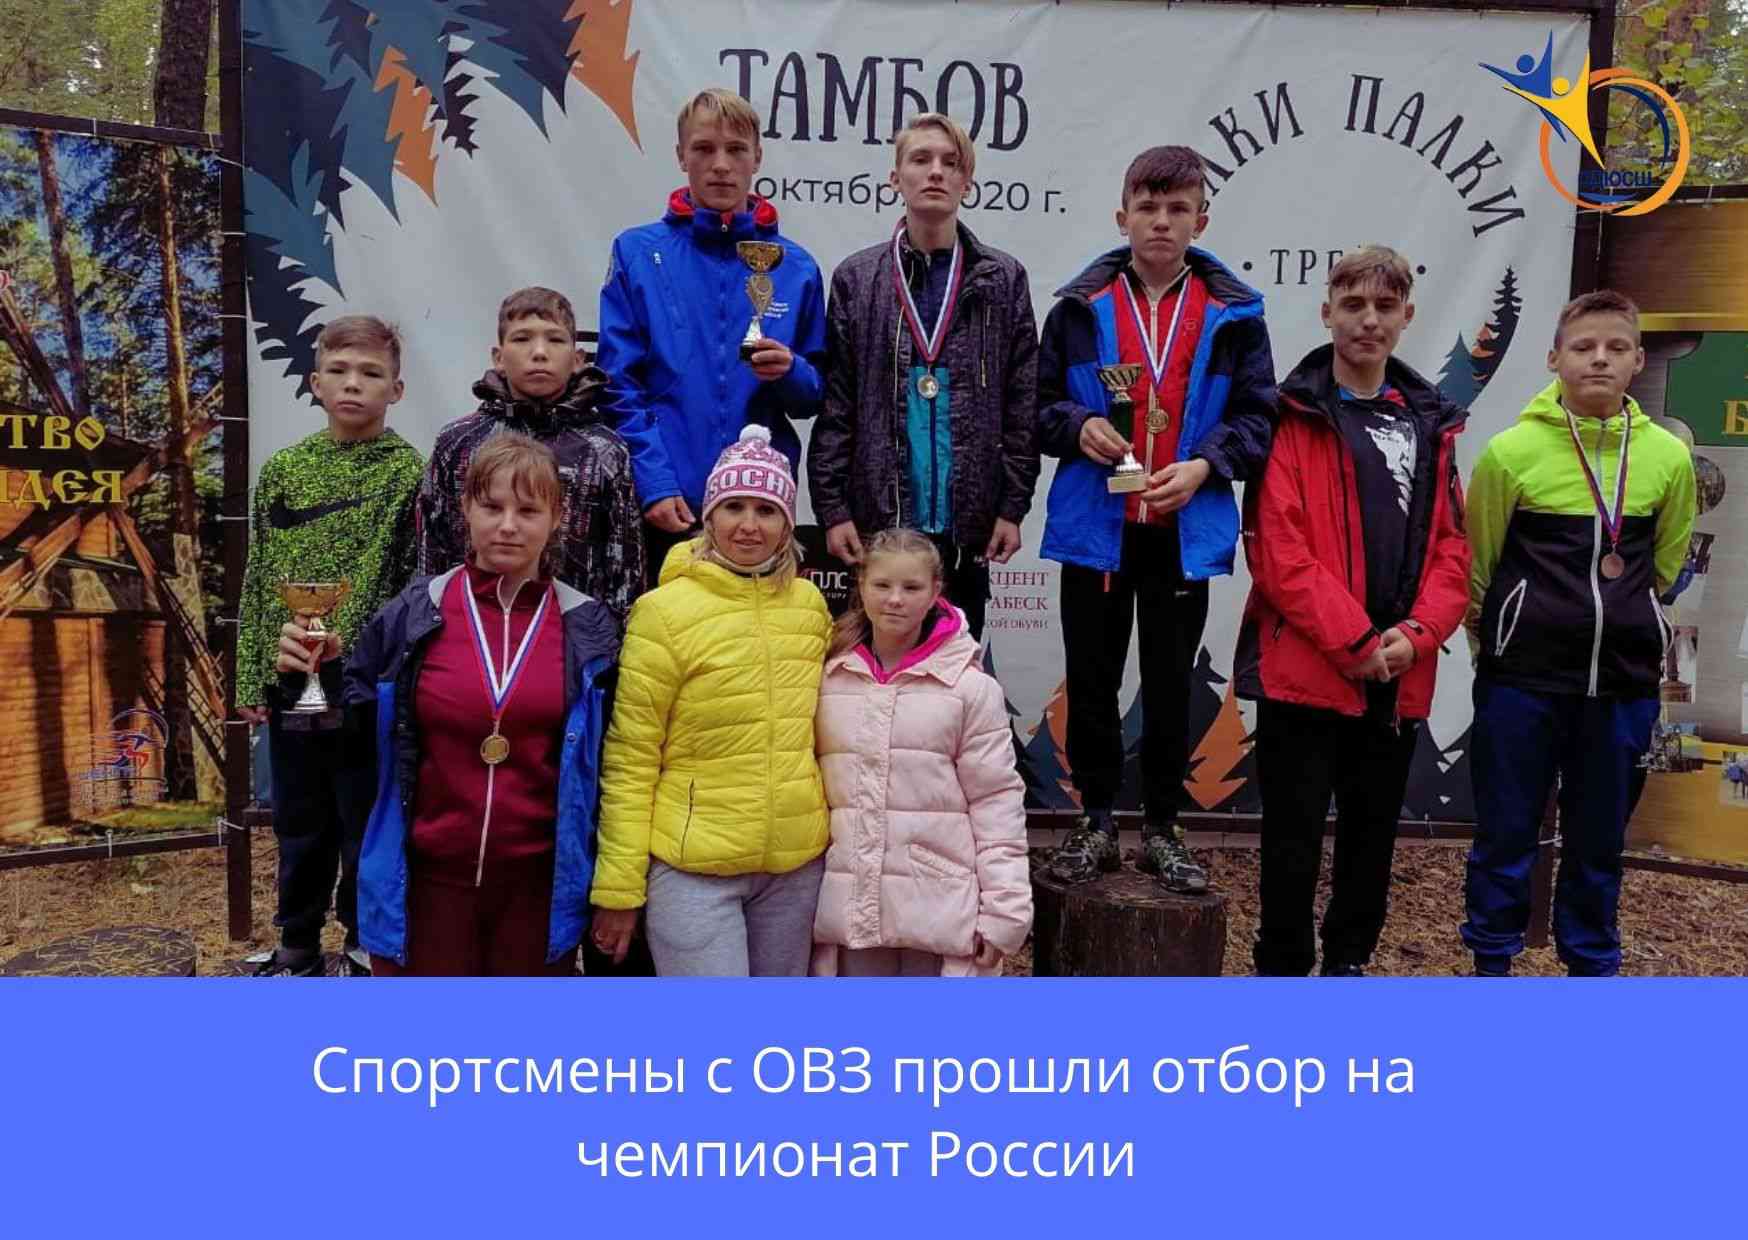 Тамбовские практики туризма и краеведения одни из лучших в России32